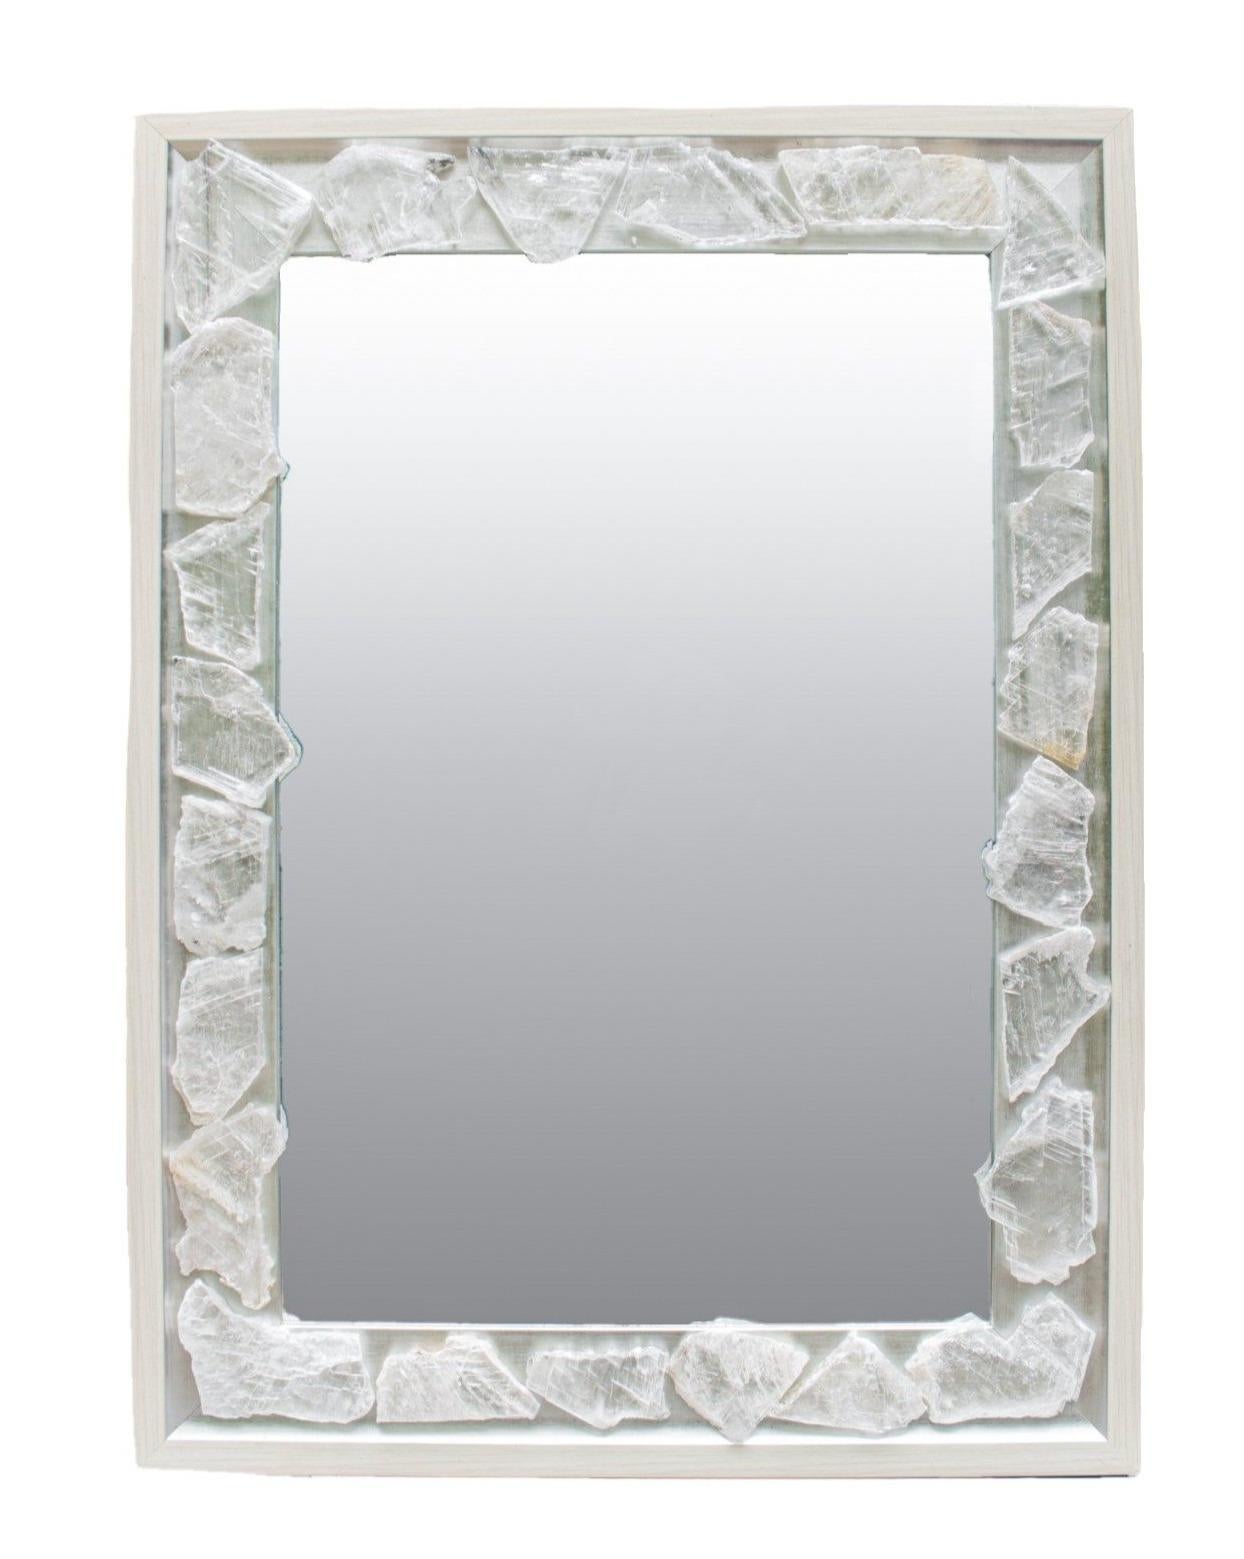 Miroir en sélénite avec un cadre argenté et crème par Interi.

Le miroir est orné de tranches de sélénite. La sélénite est une forme cristallisée du gypse. Il est constitué de stries qui ressemblent à des fibres optiques. Bien que la sélénite se